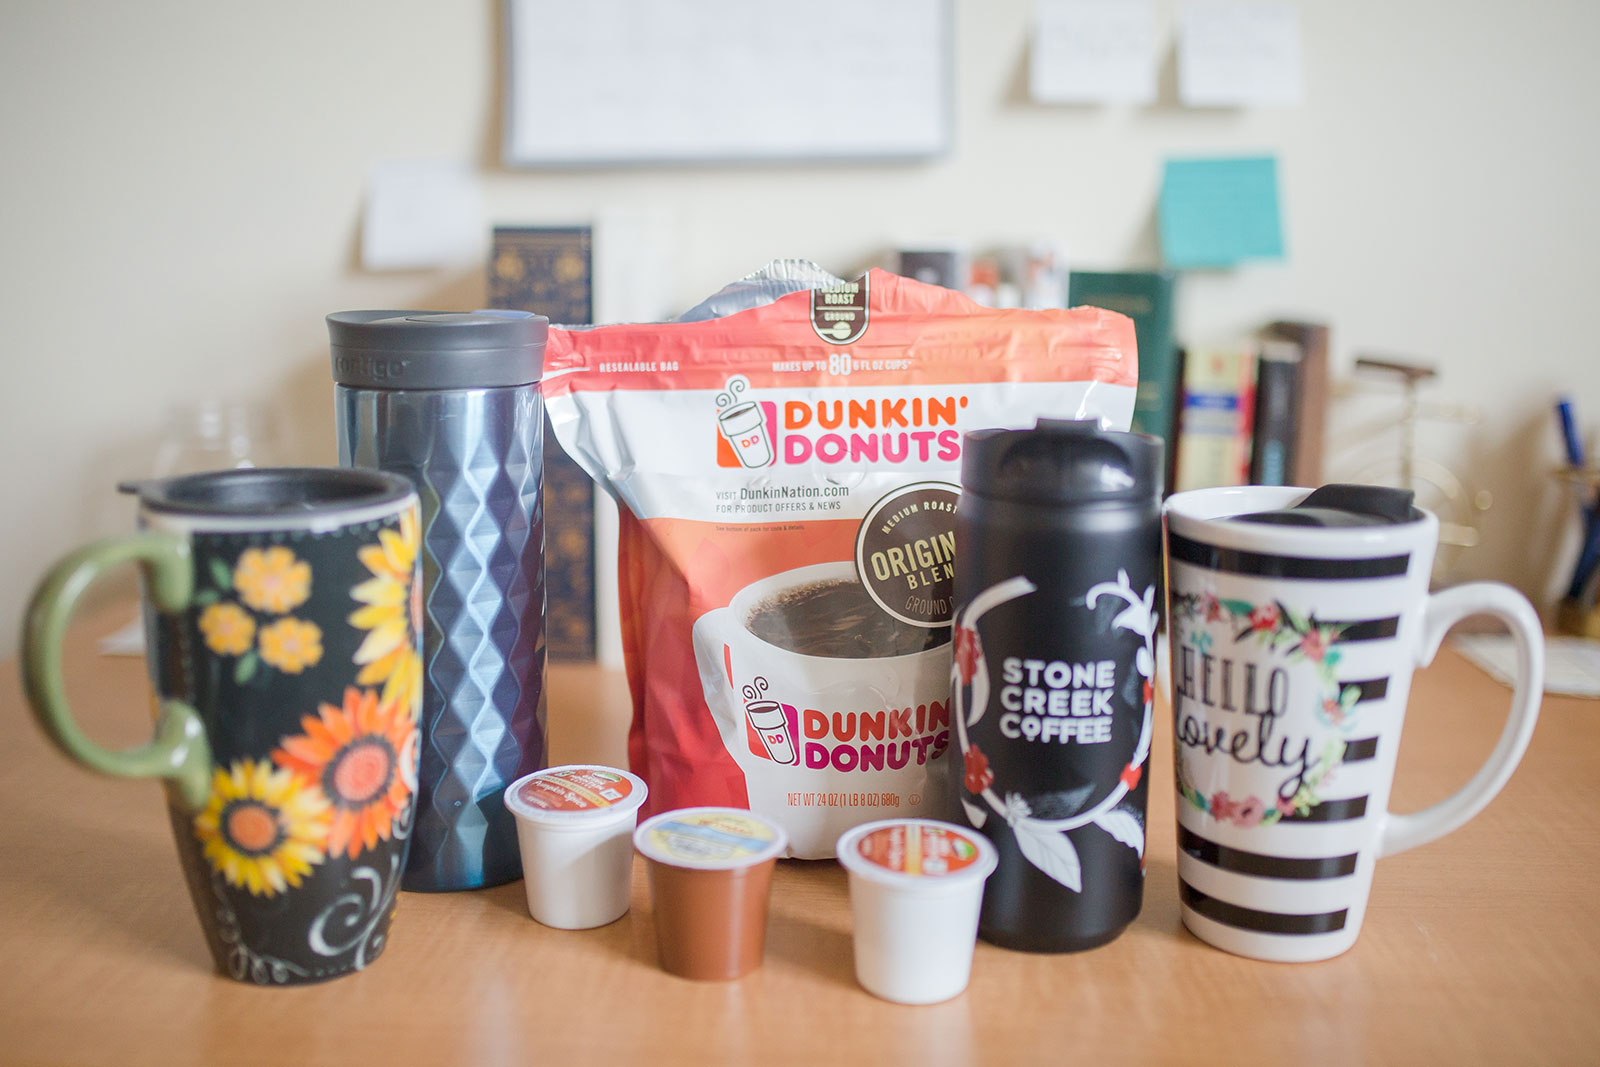 Get yourself a reusable coffee mug like this.